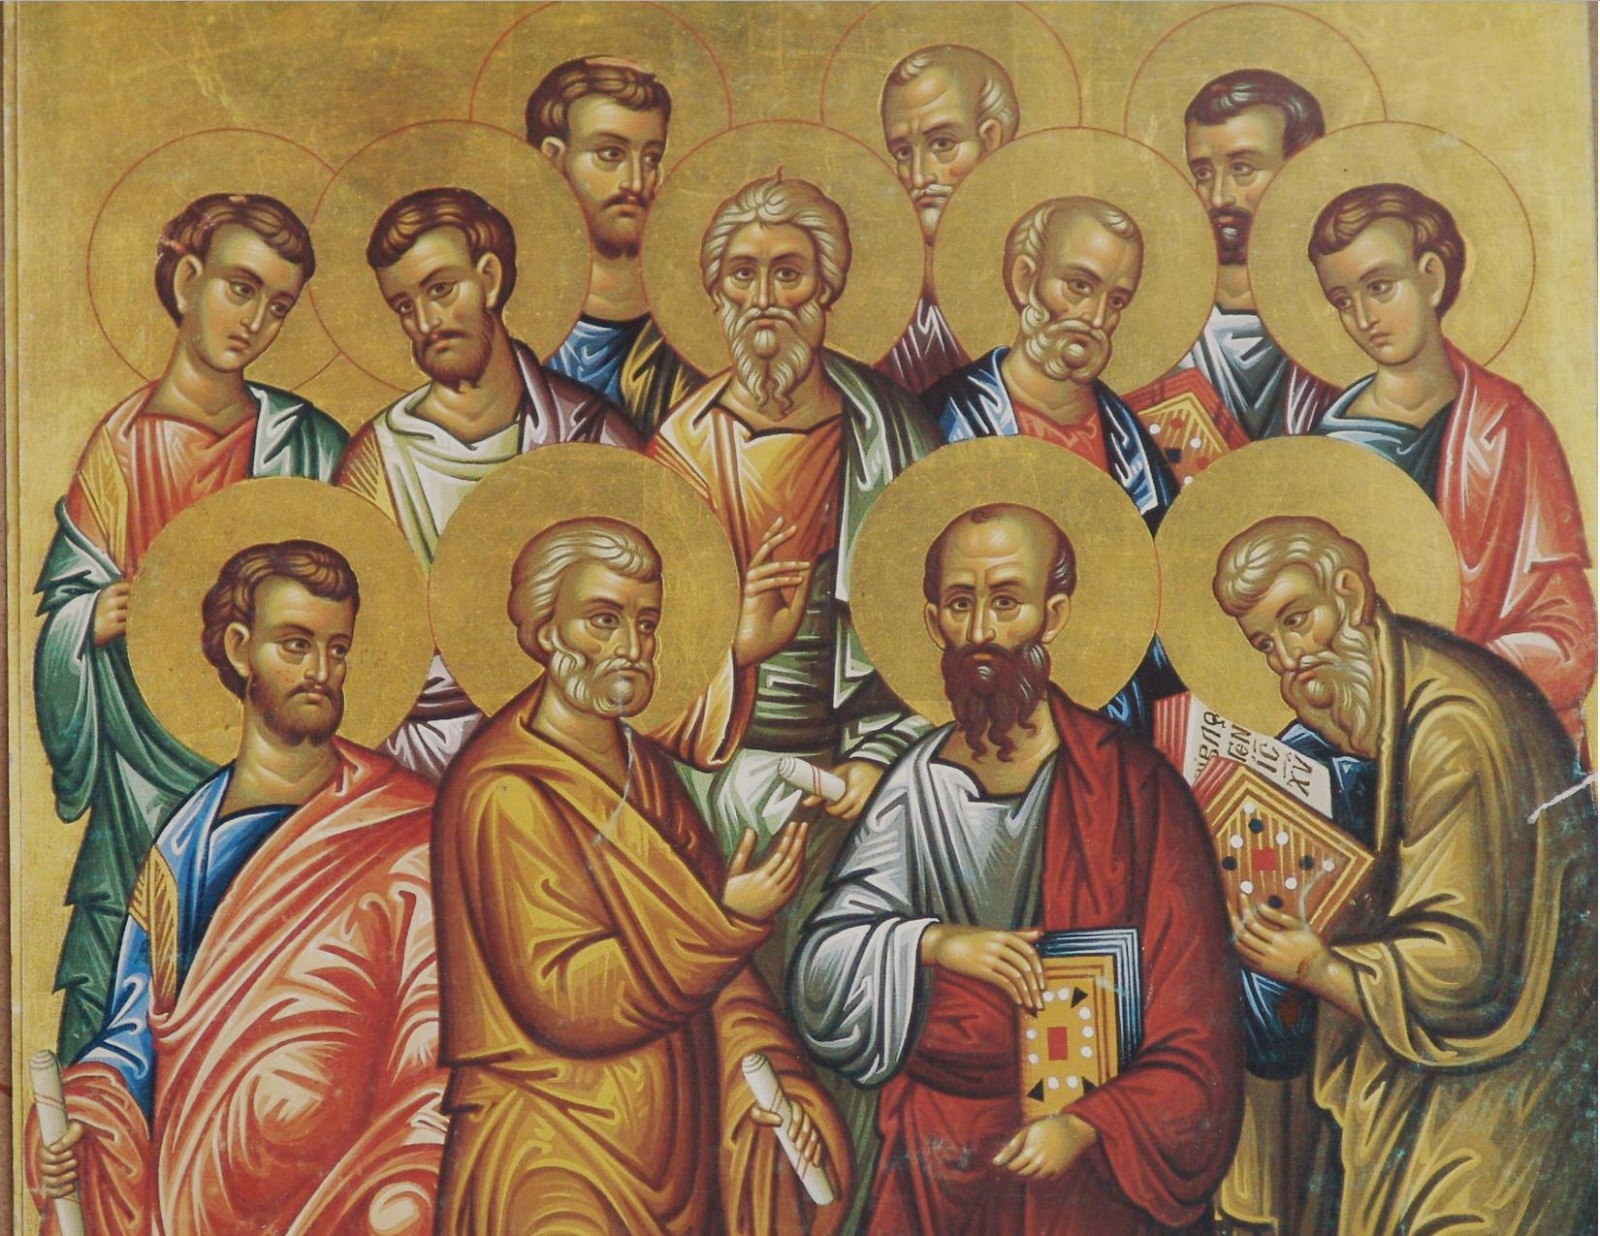 Святой предок 1. Икона Христос и 12 апостолов. Ученики Иисуса Христа 12 апостолов.